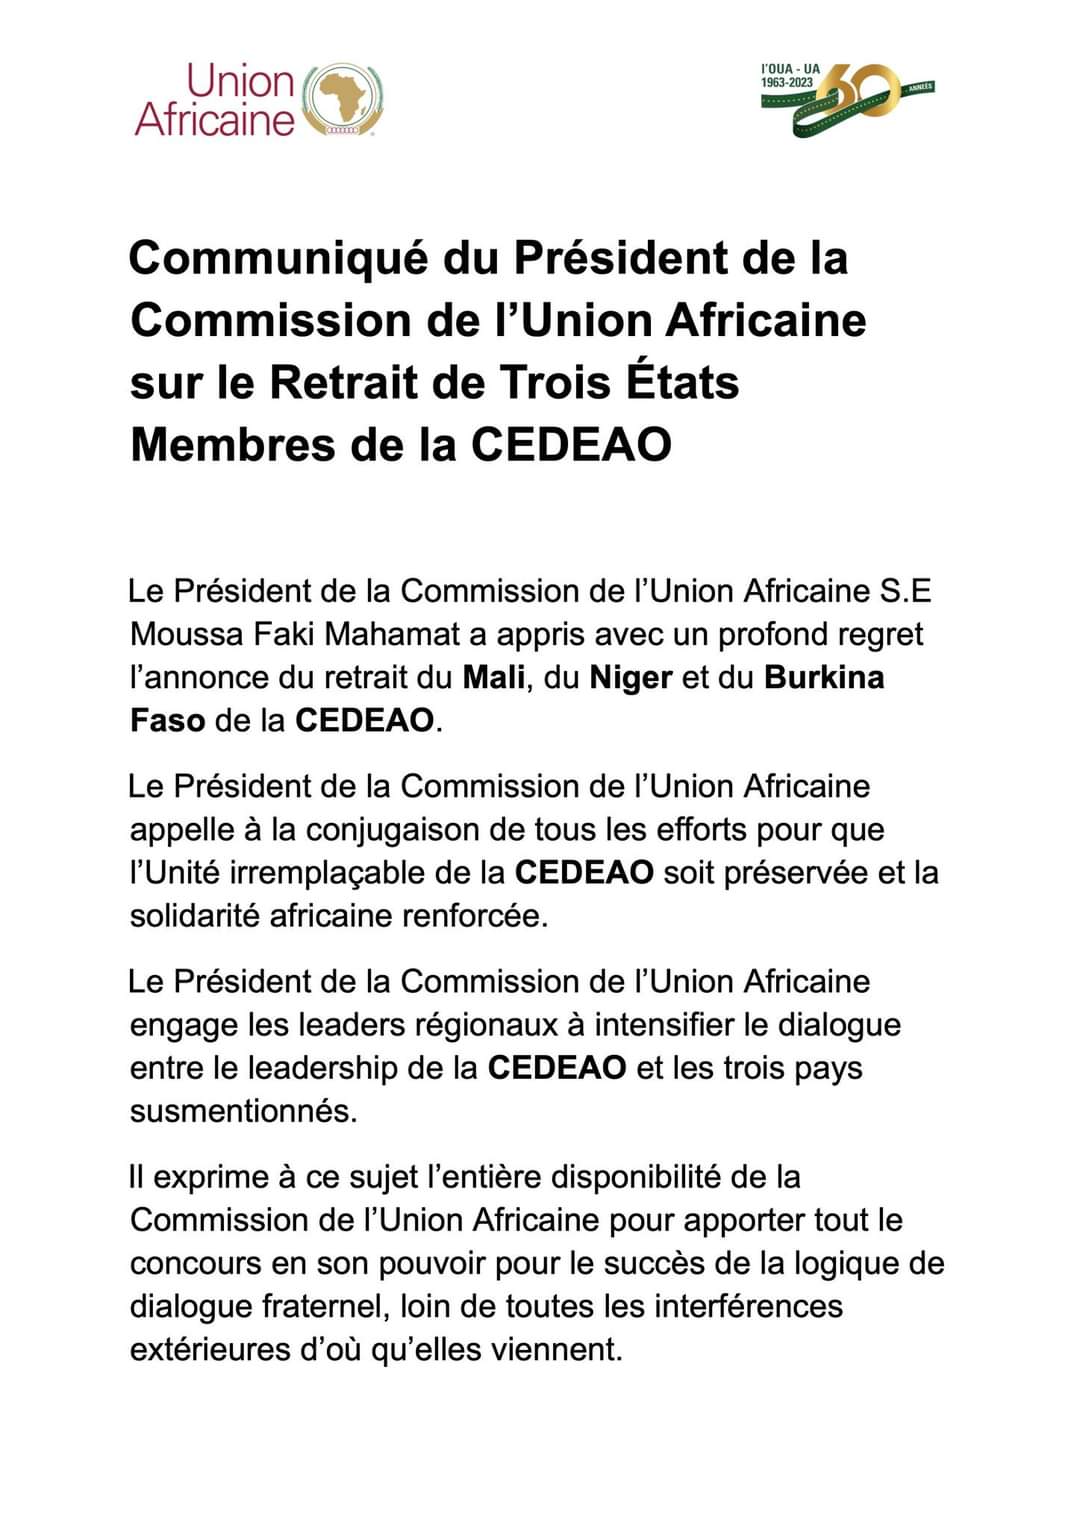 Communiqué de l'union Africaine sur la CEDEAO